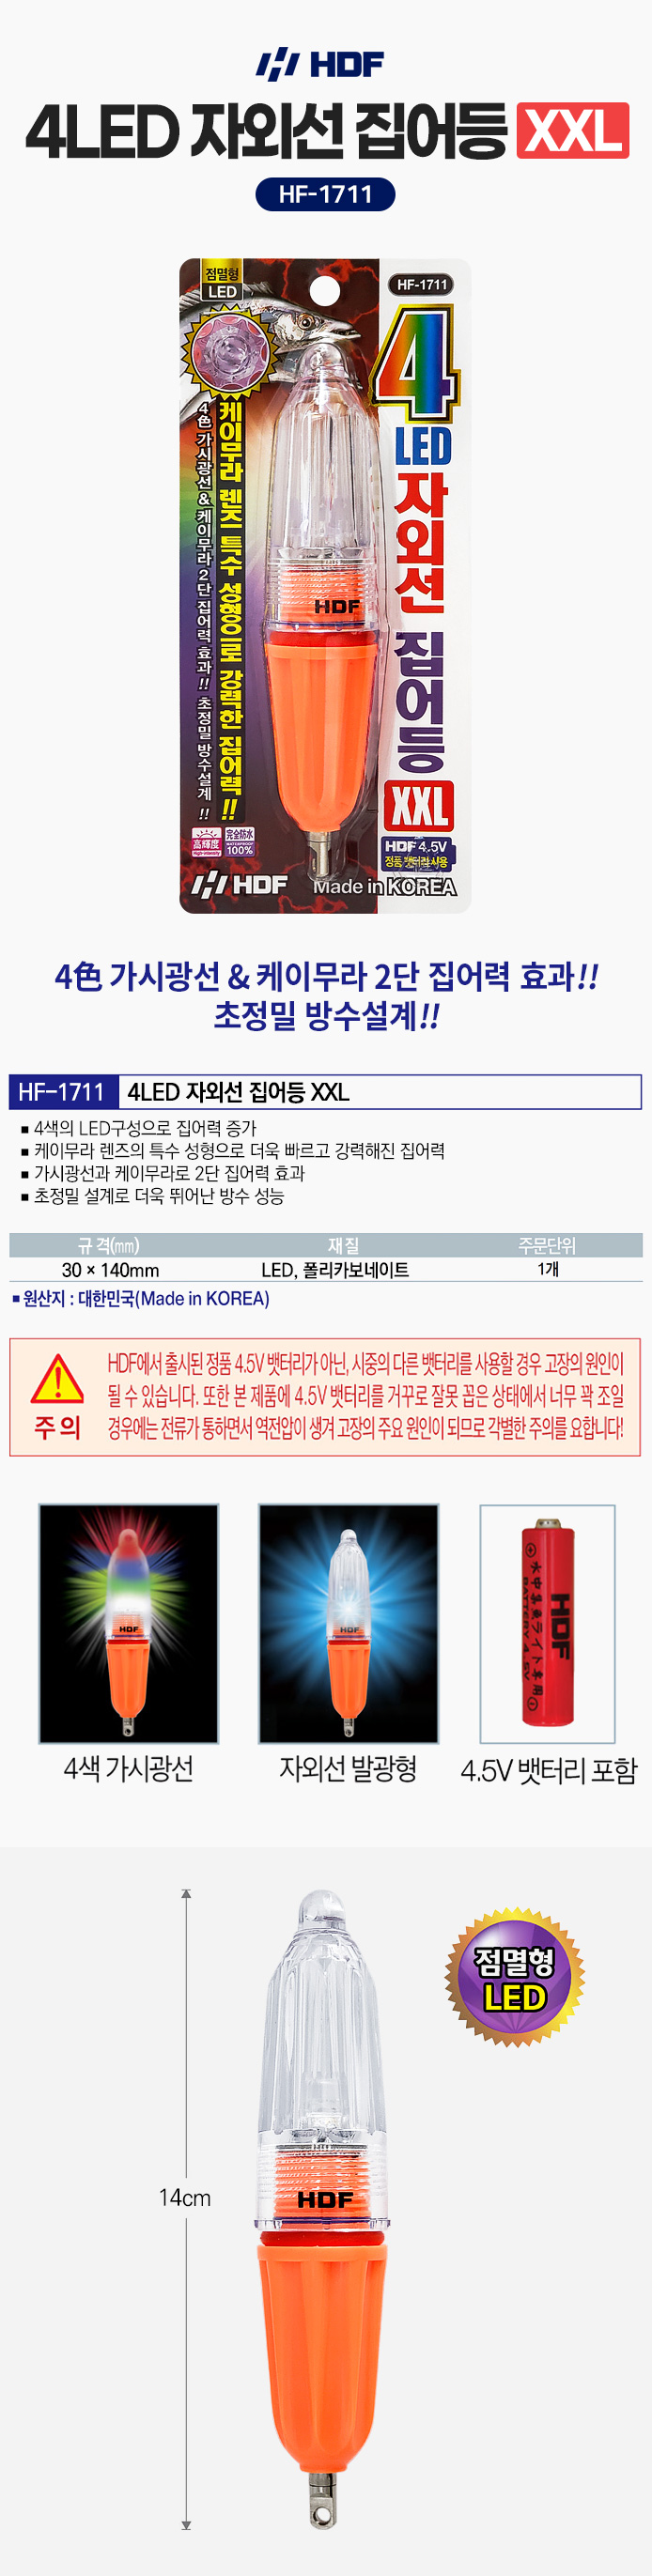 해동 4LED 자외선 집어등 XXL HF-1711